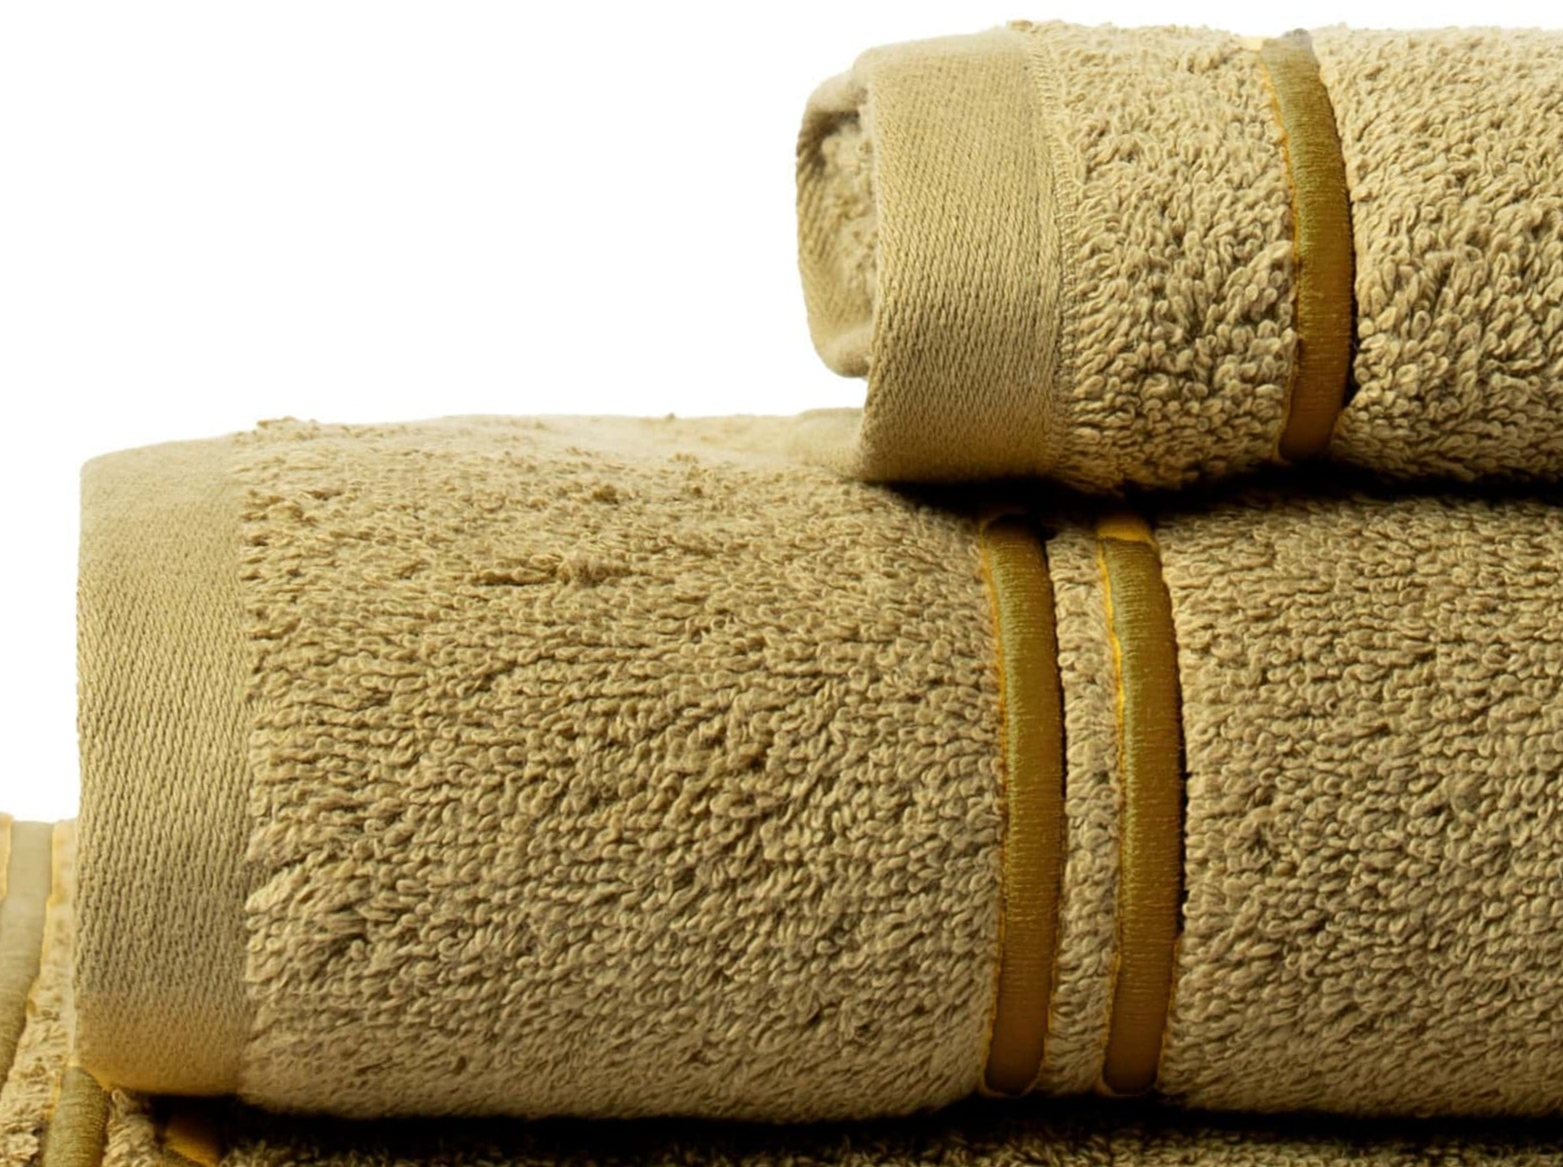 Conjunto de 3 toalhas de banho Molly 100% algodão orgânico 500gr/m² (caqui)